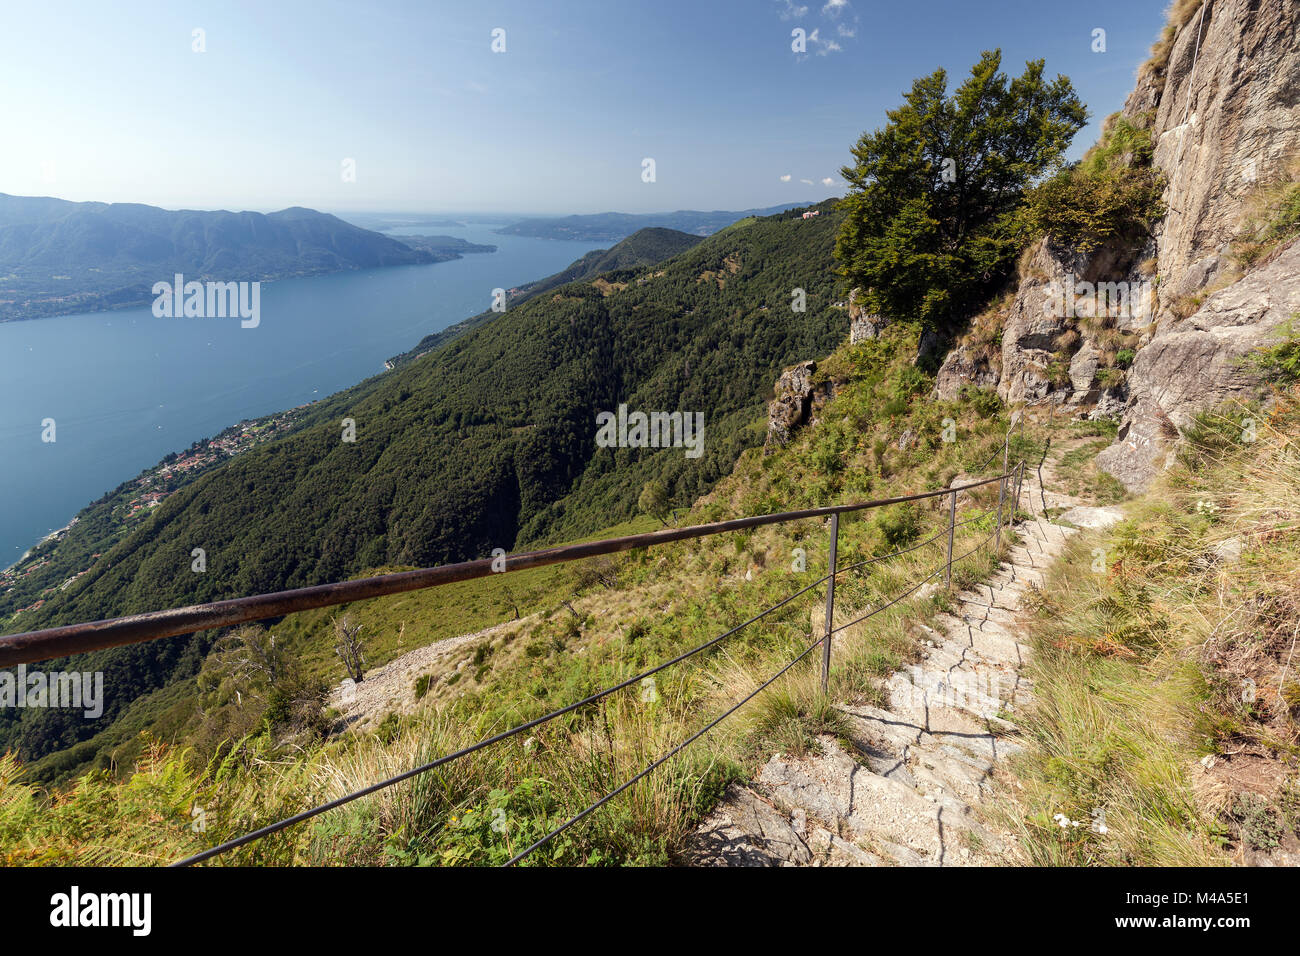 View from Monte Morissolo on Lago Maggiore,Cannero Riviera,Verbano-Cusio-Ossola province,Piedmont region,Italy Stock Photo